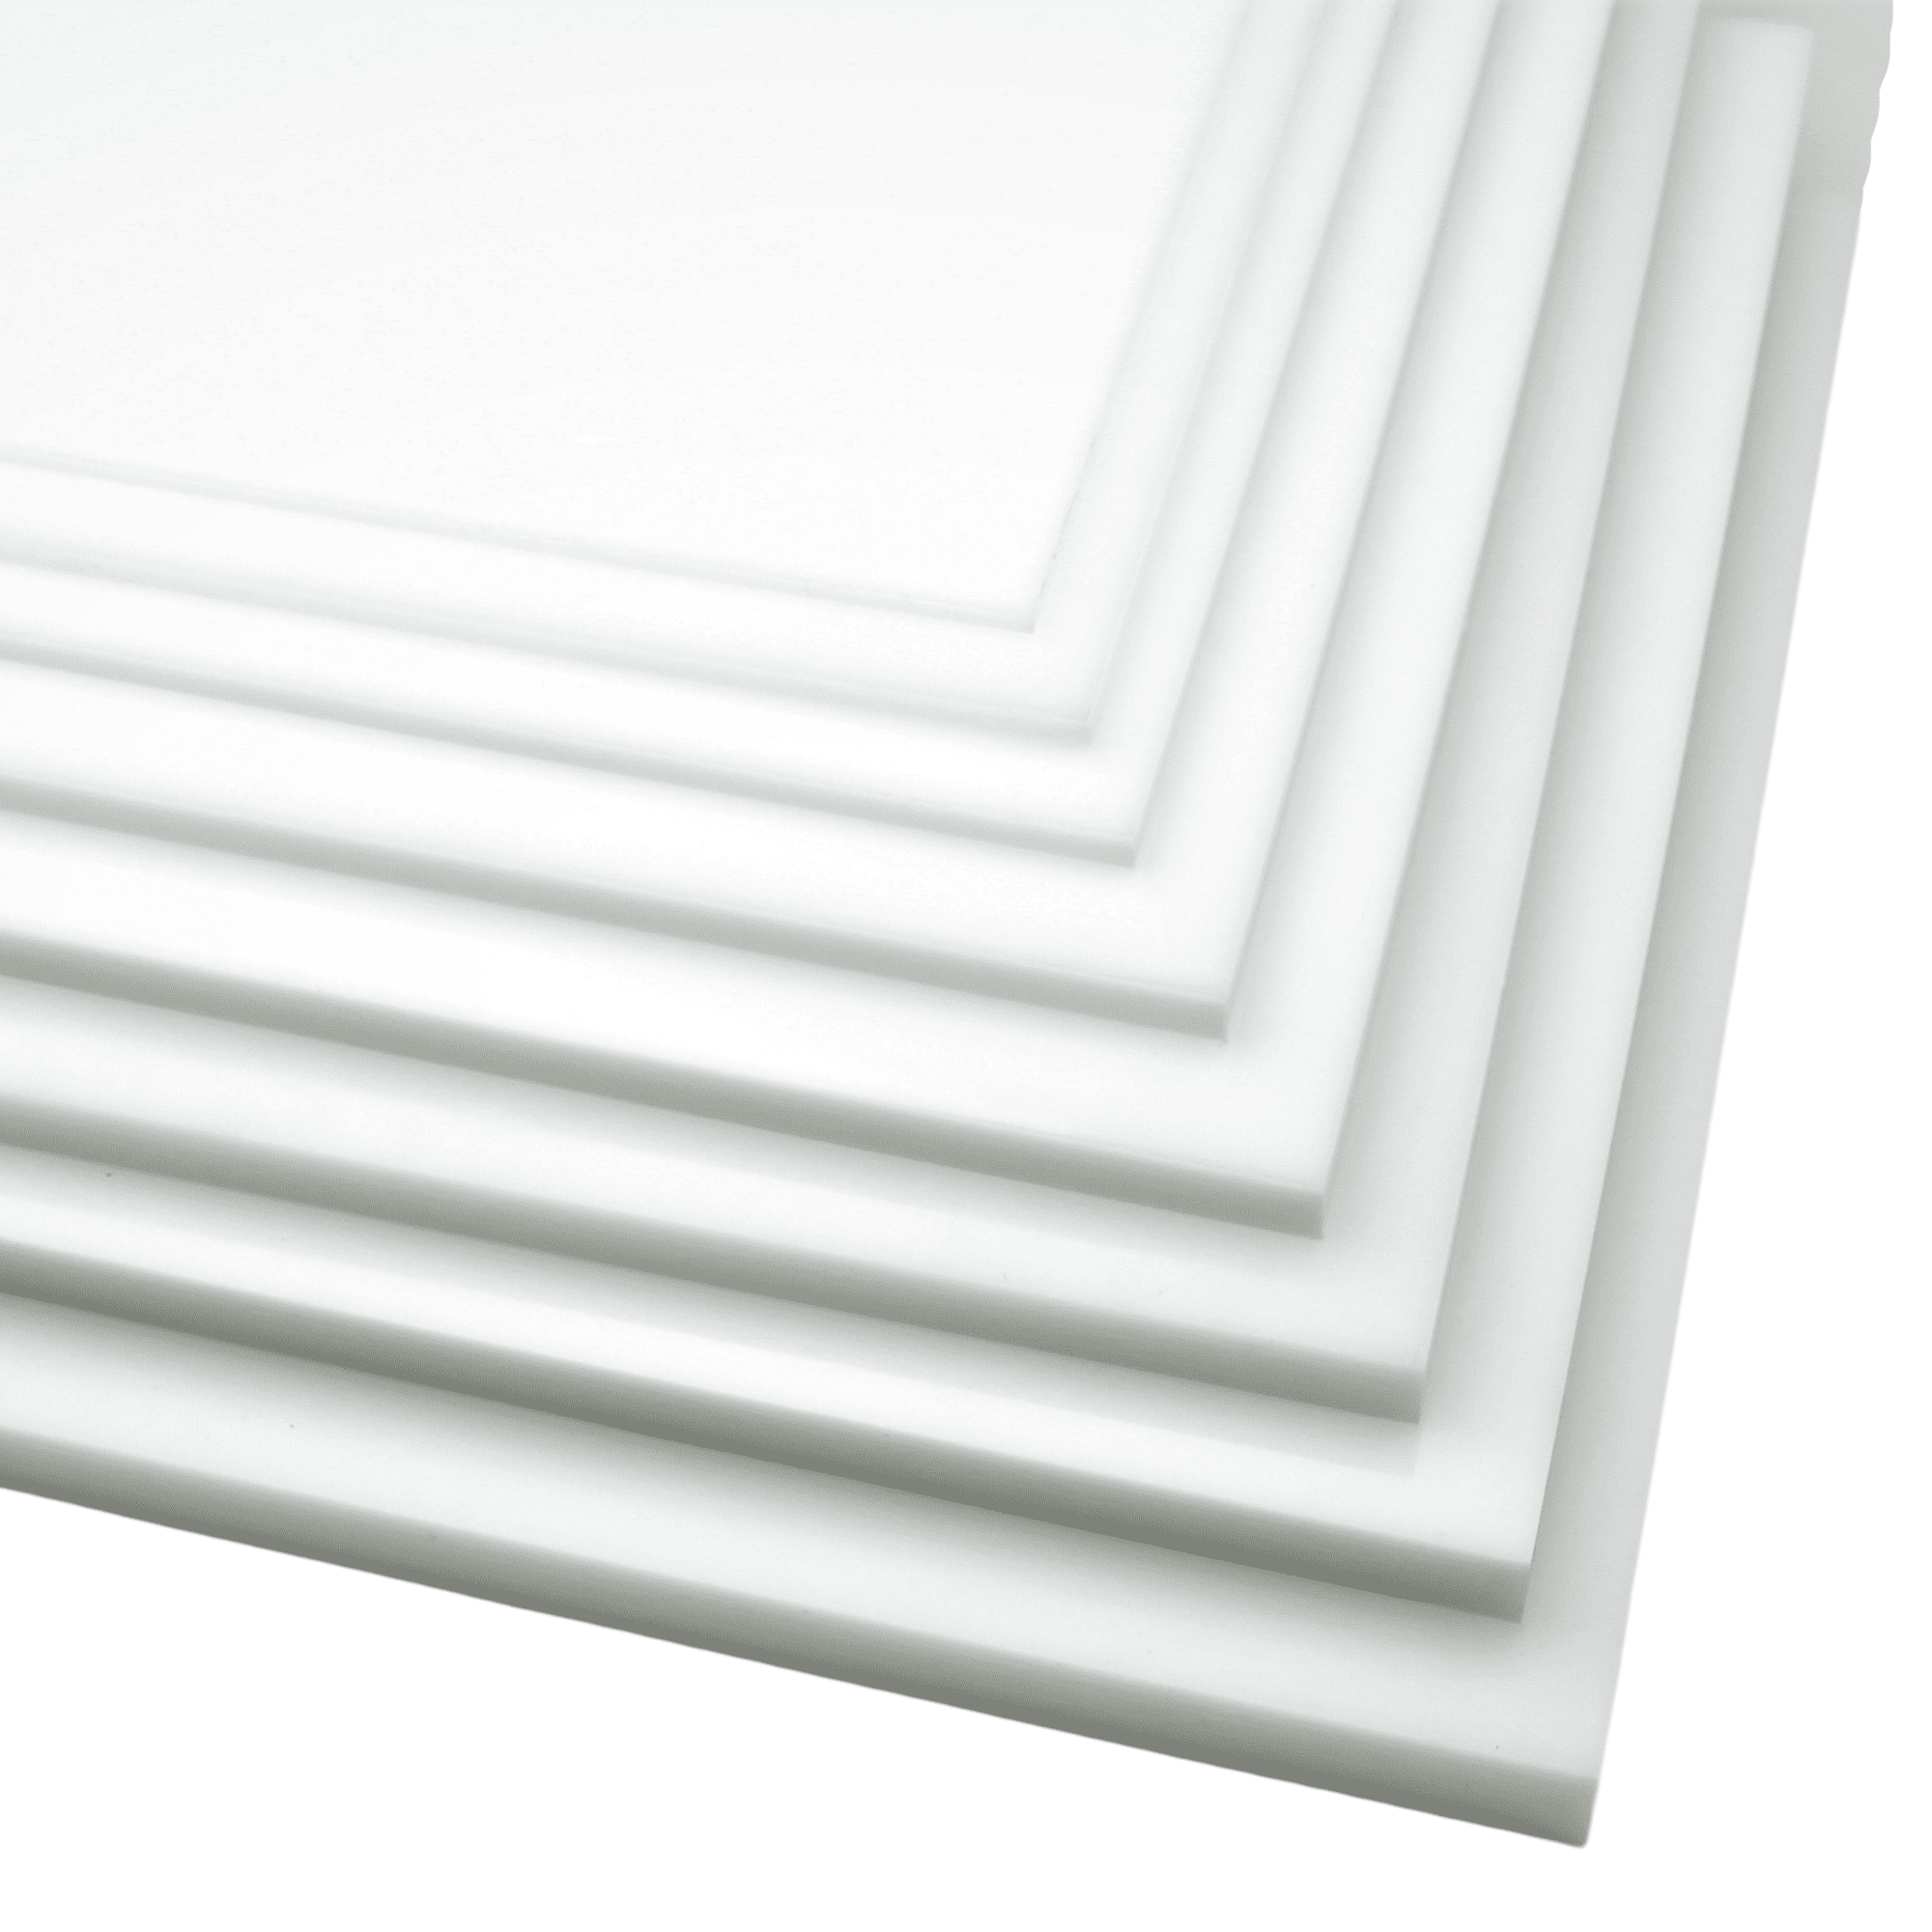 High Density Polyethylene HDPE Plastic Sheet 1/4" x 11" x 24" Black Textured 